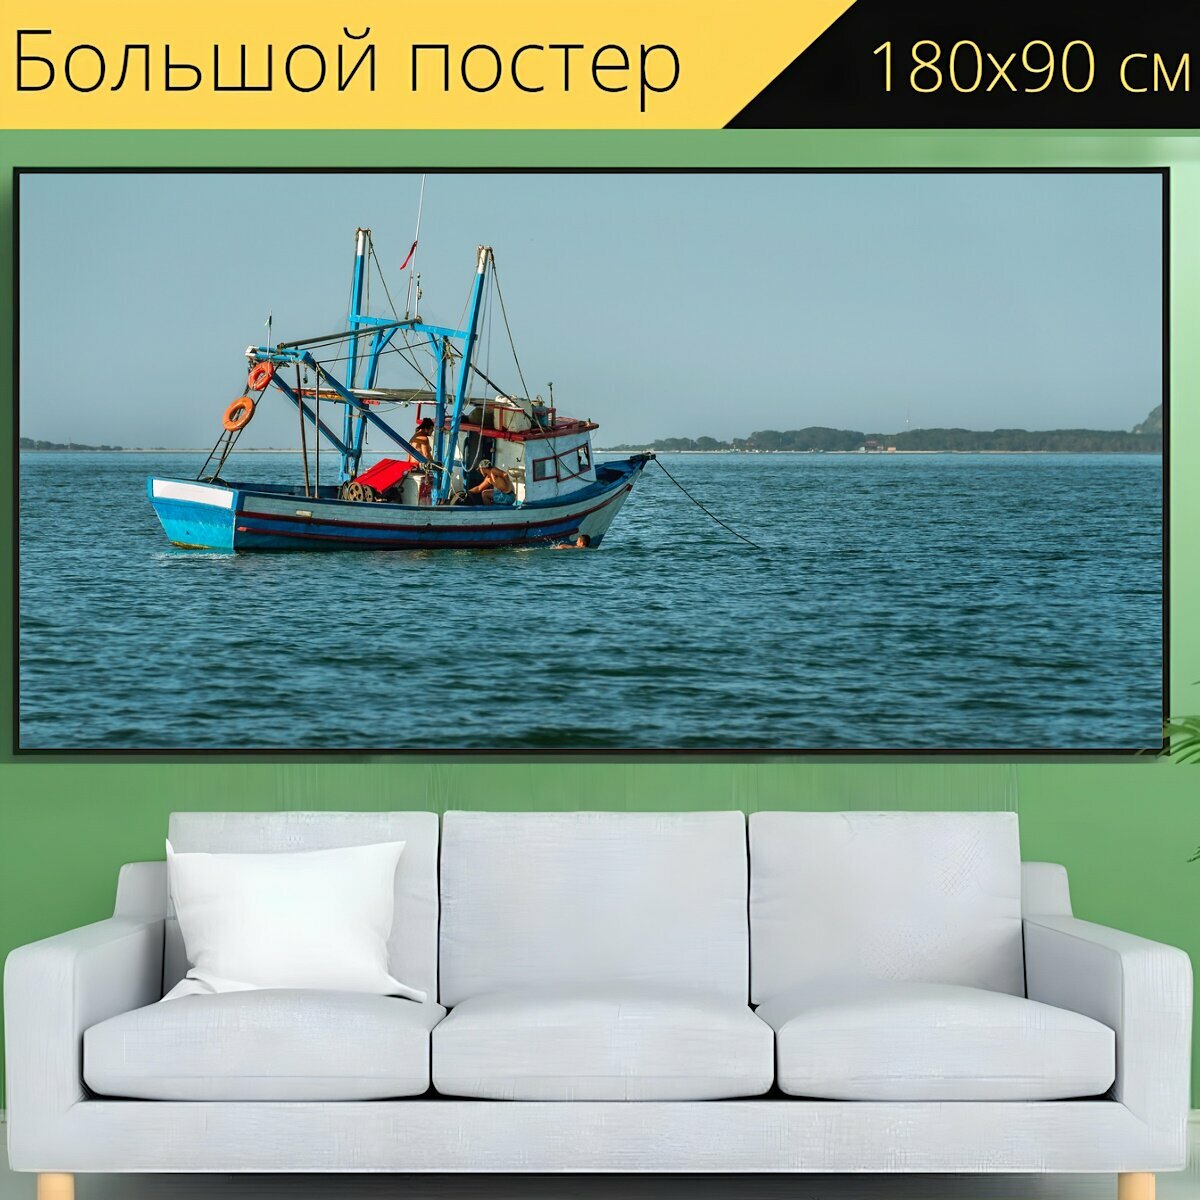 Большой постер "Ловит рыбу, рыболовная лодка, рыбак" 180 x 90 см. для интерьера